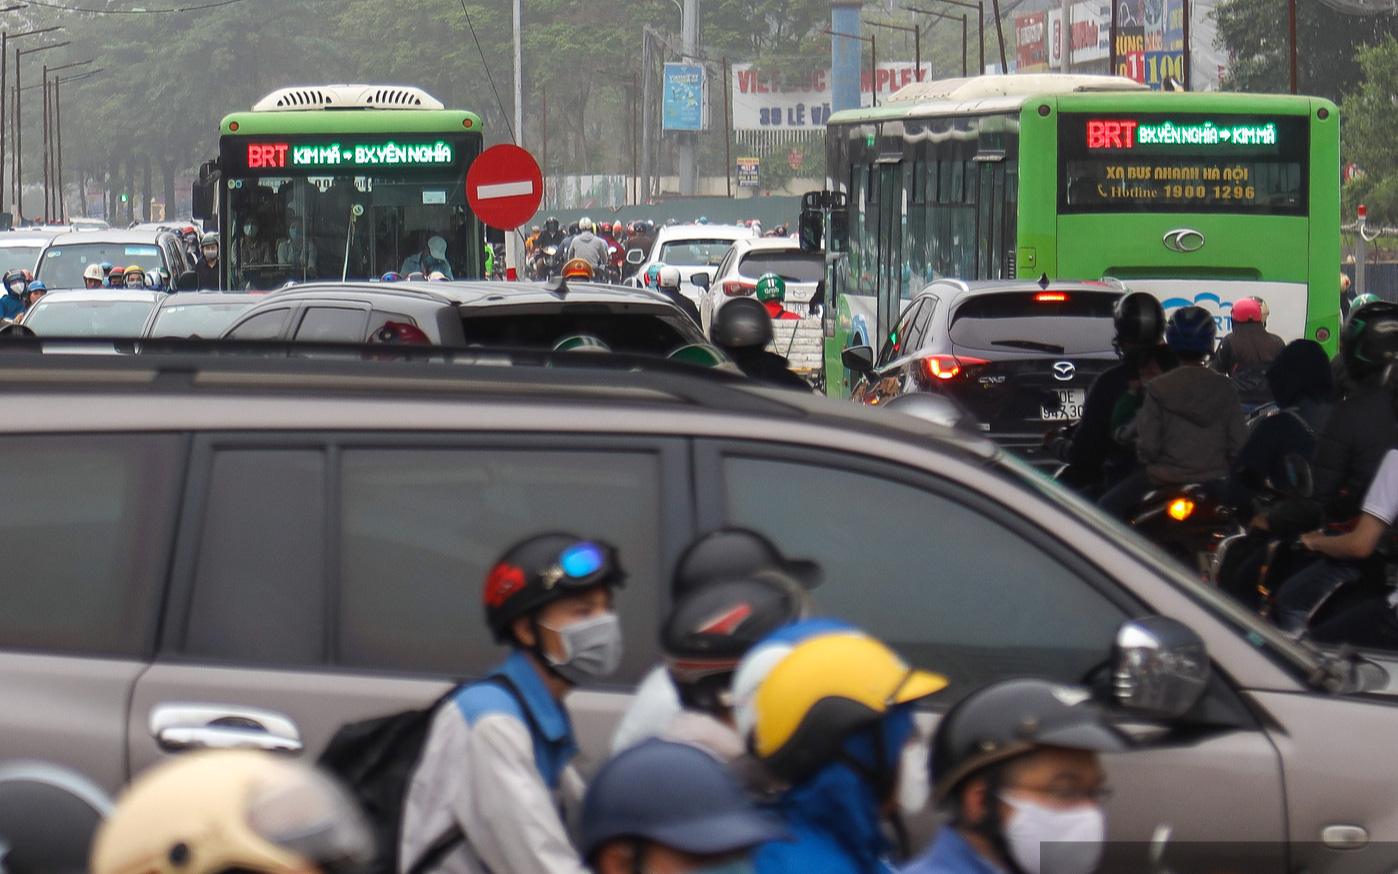 Hà Nội tiếp tục duy trì hay dừng buýt nhanh BRT Yên Nghĩa - Kim Mã?